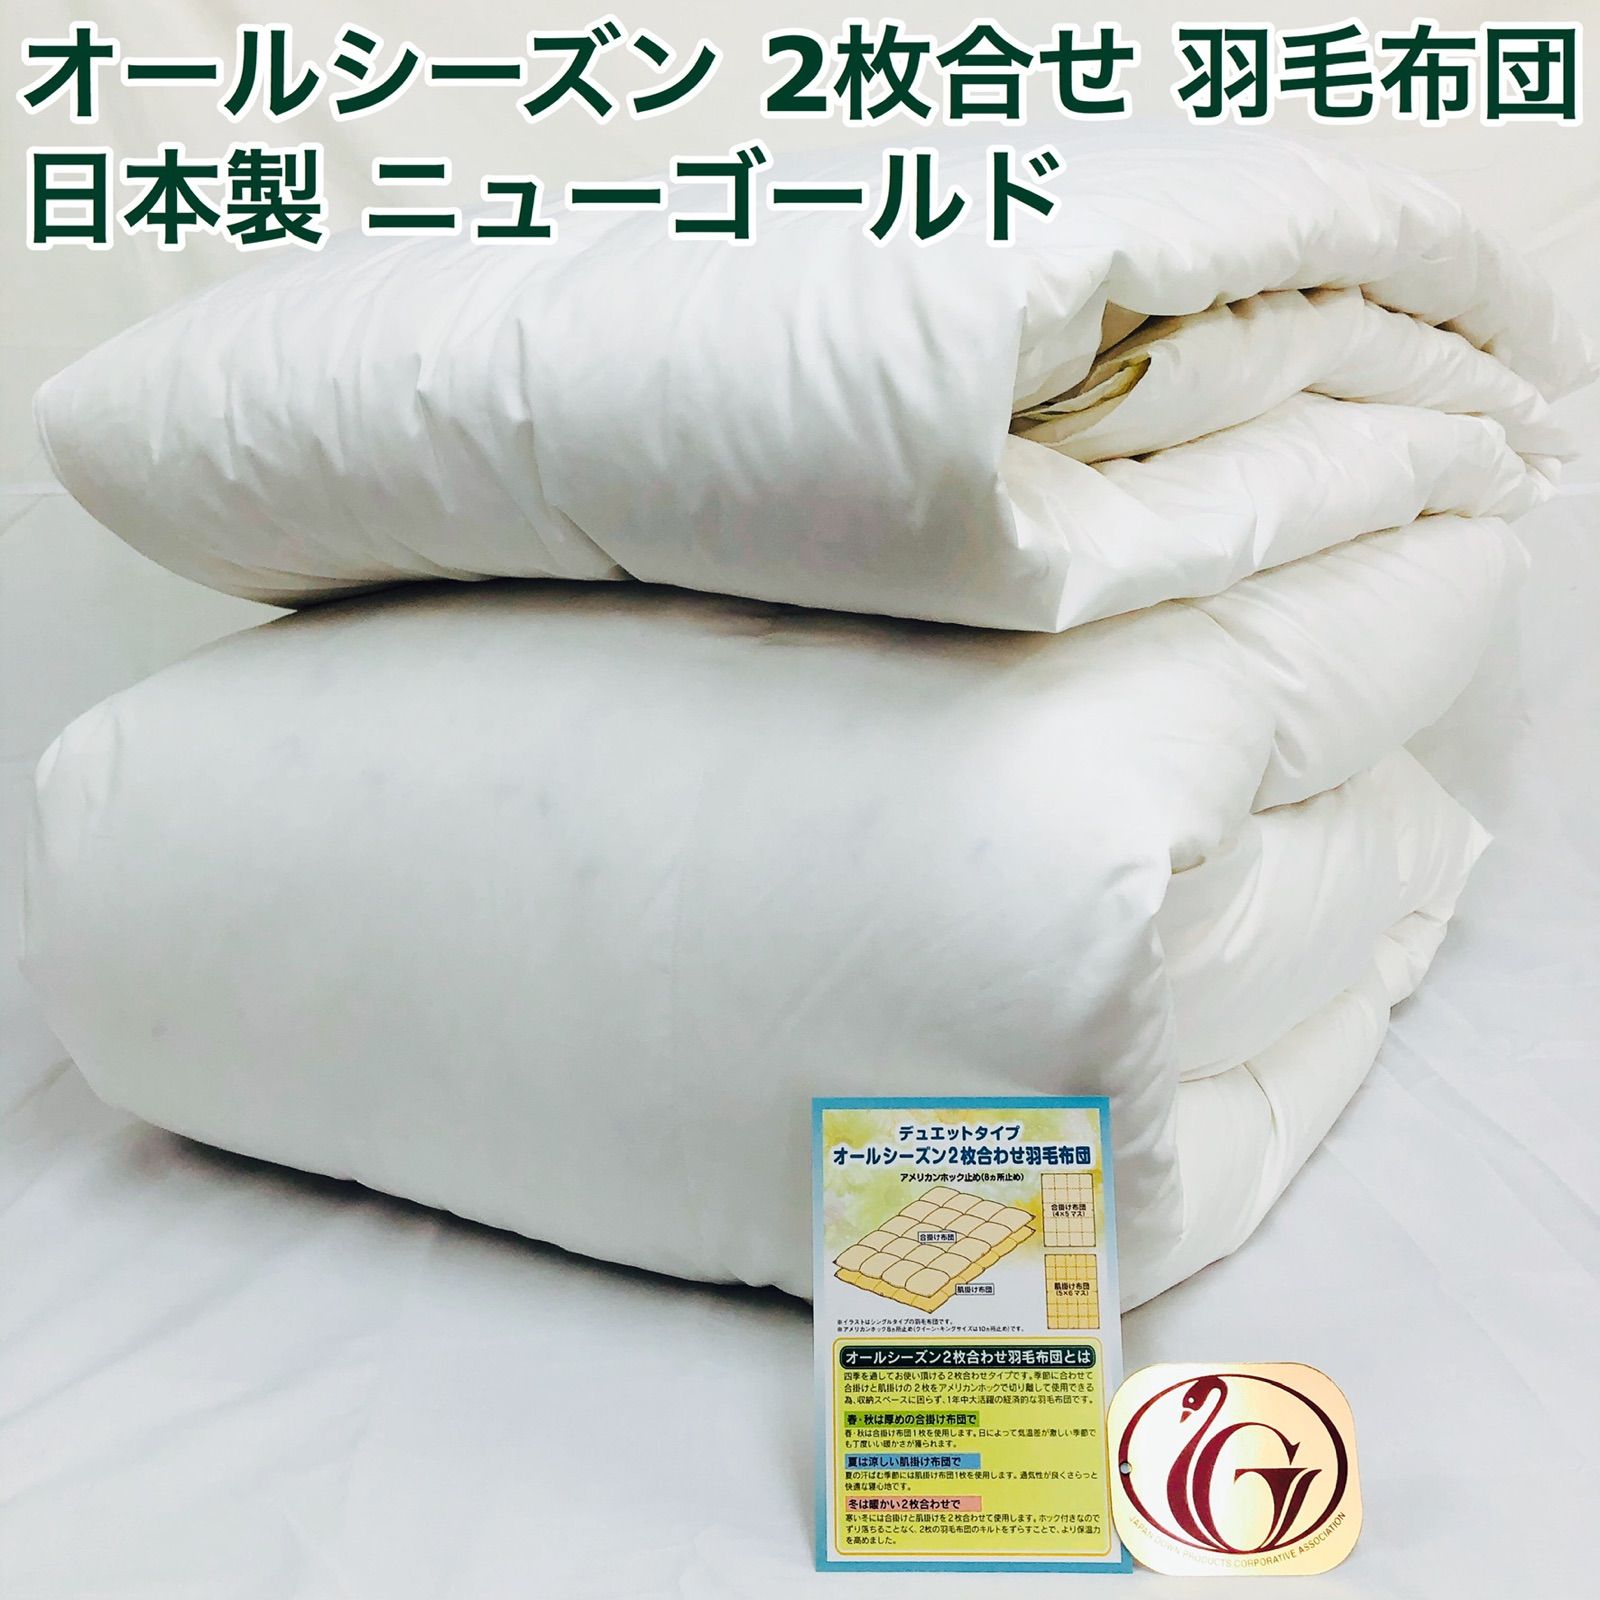 2枚合わせ 羽毛布団 セミダブル ニューゴールド 白色日本製 170×210cm